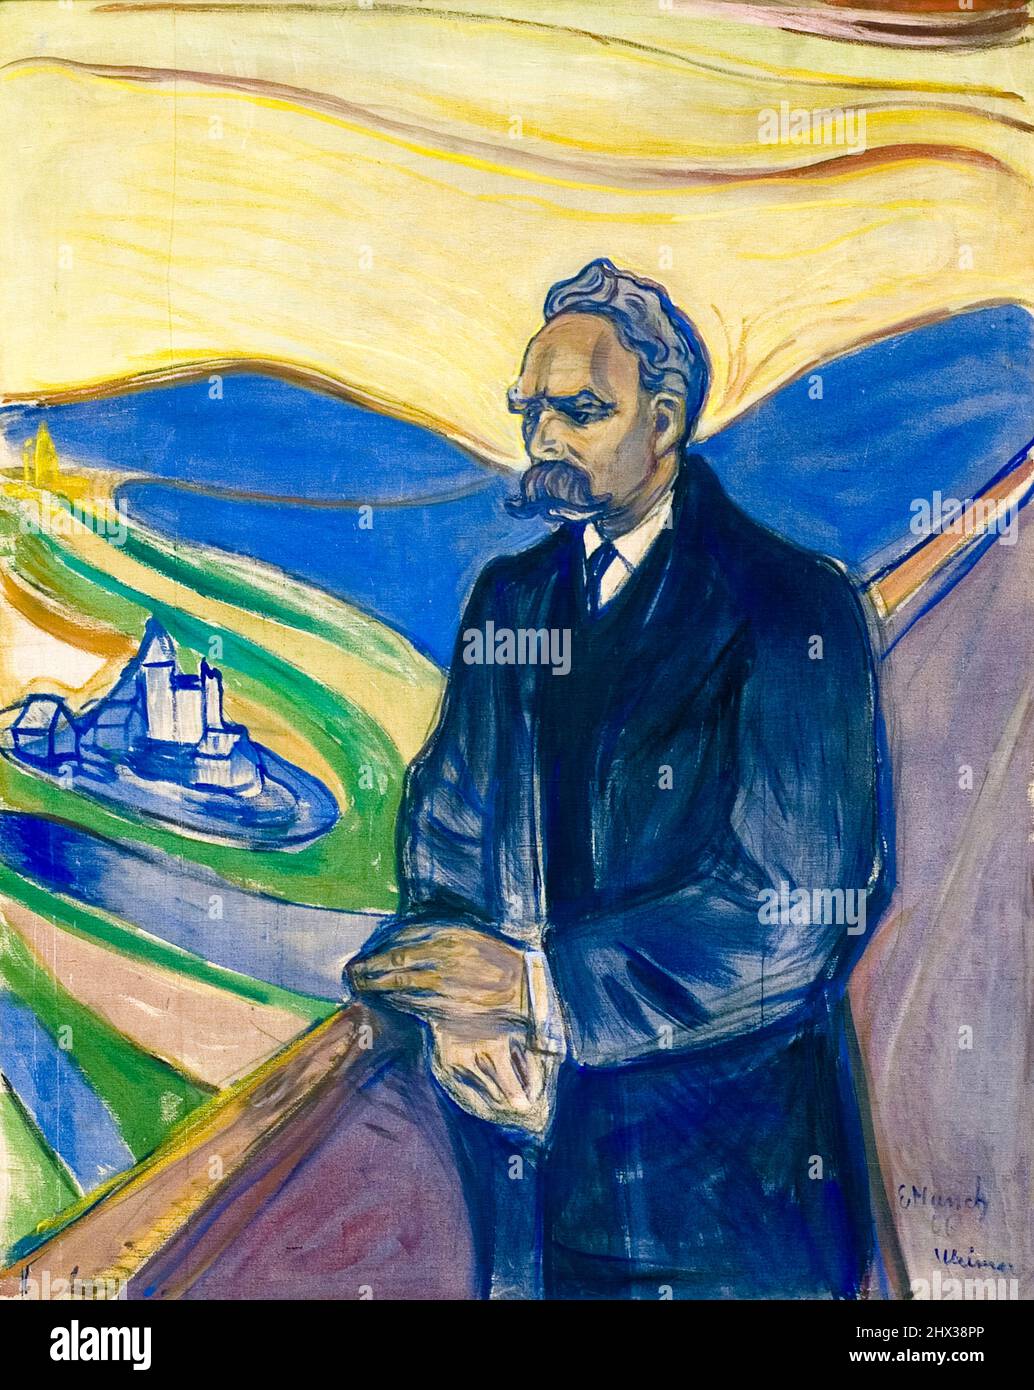 Friedrich Nietzsche (1844-1900), philosophe allemand, portrait huile sur toile par Edvard Munch, 1906 Banque D'Images